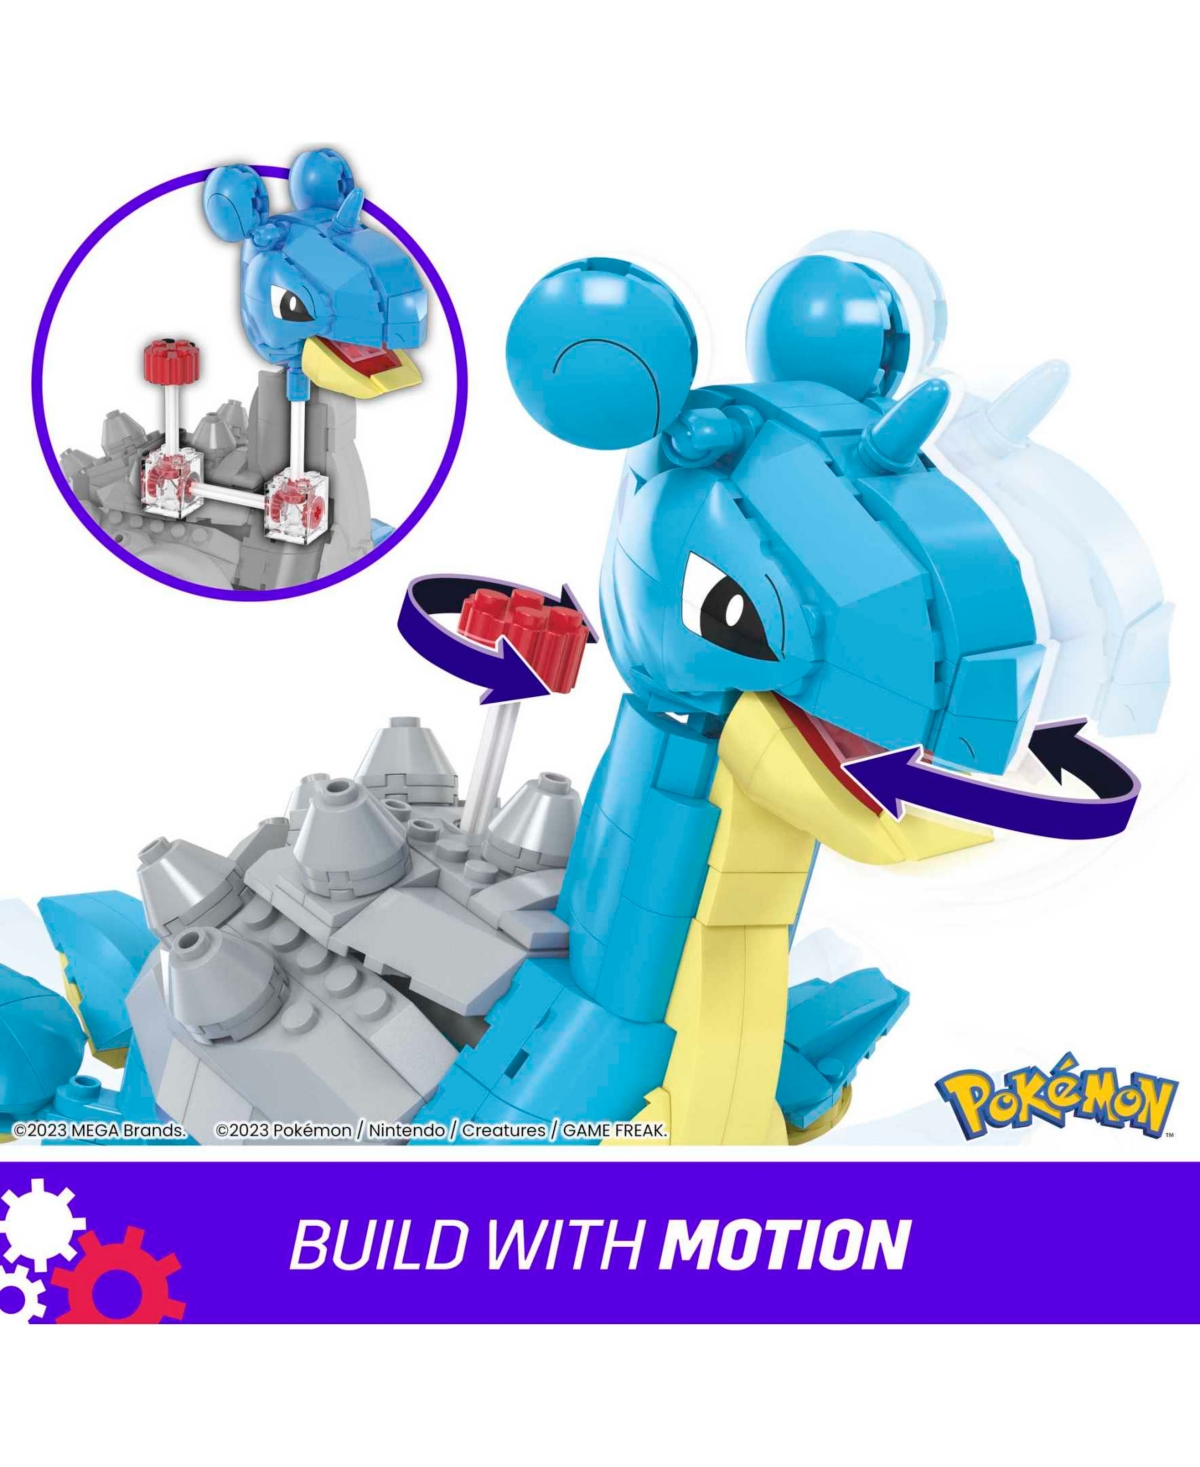 Shop Pokémon Mega Pokemon Lapras Building Toy Kit With Action Figure (527 Pieces) For Kids In Multi-color